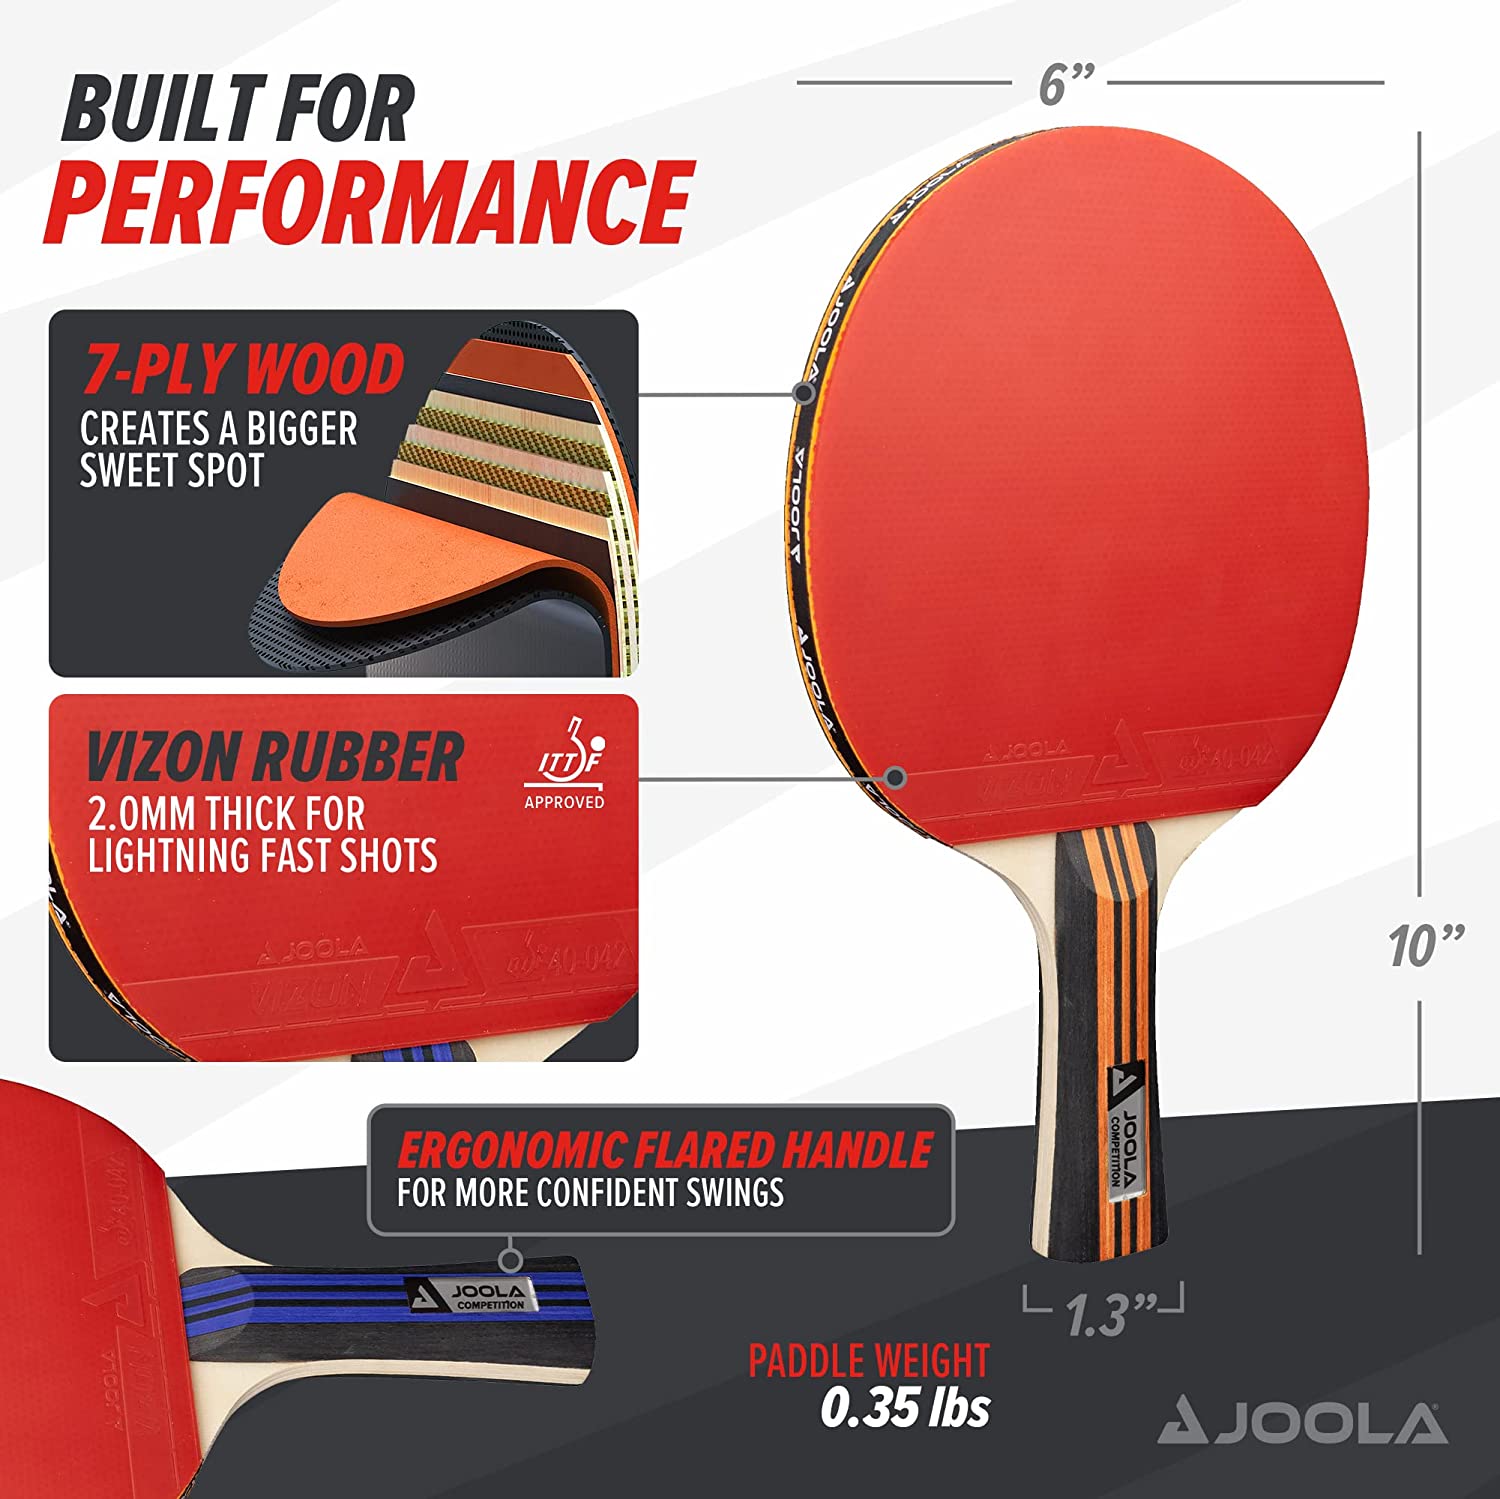 JOOLA Advanced Table Tennis Paddle Set